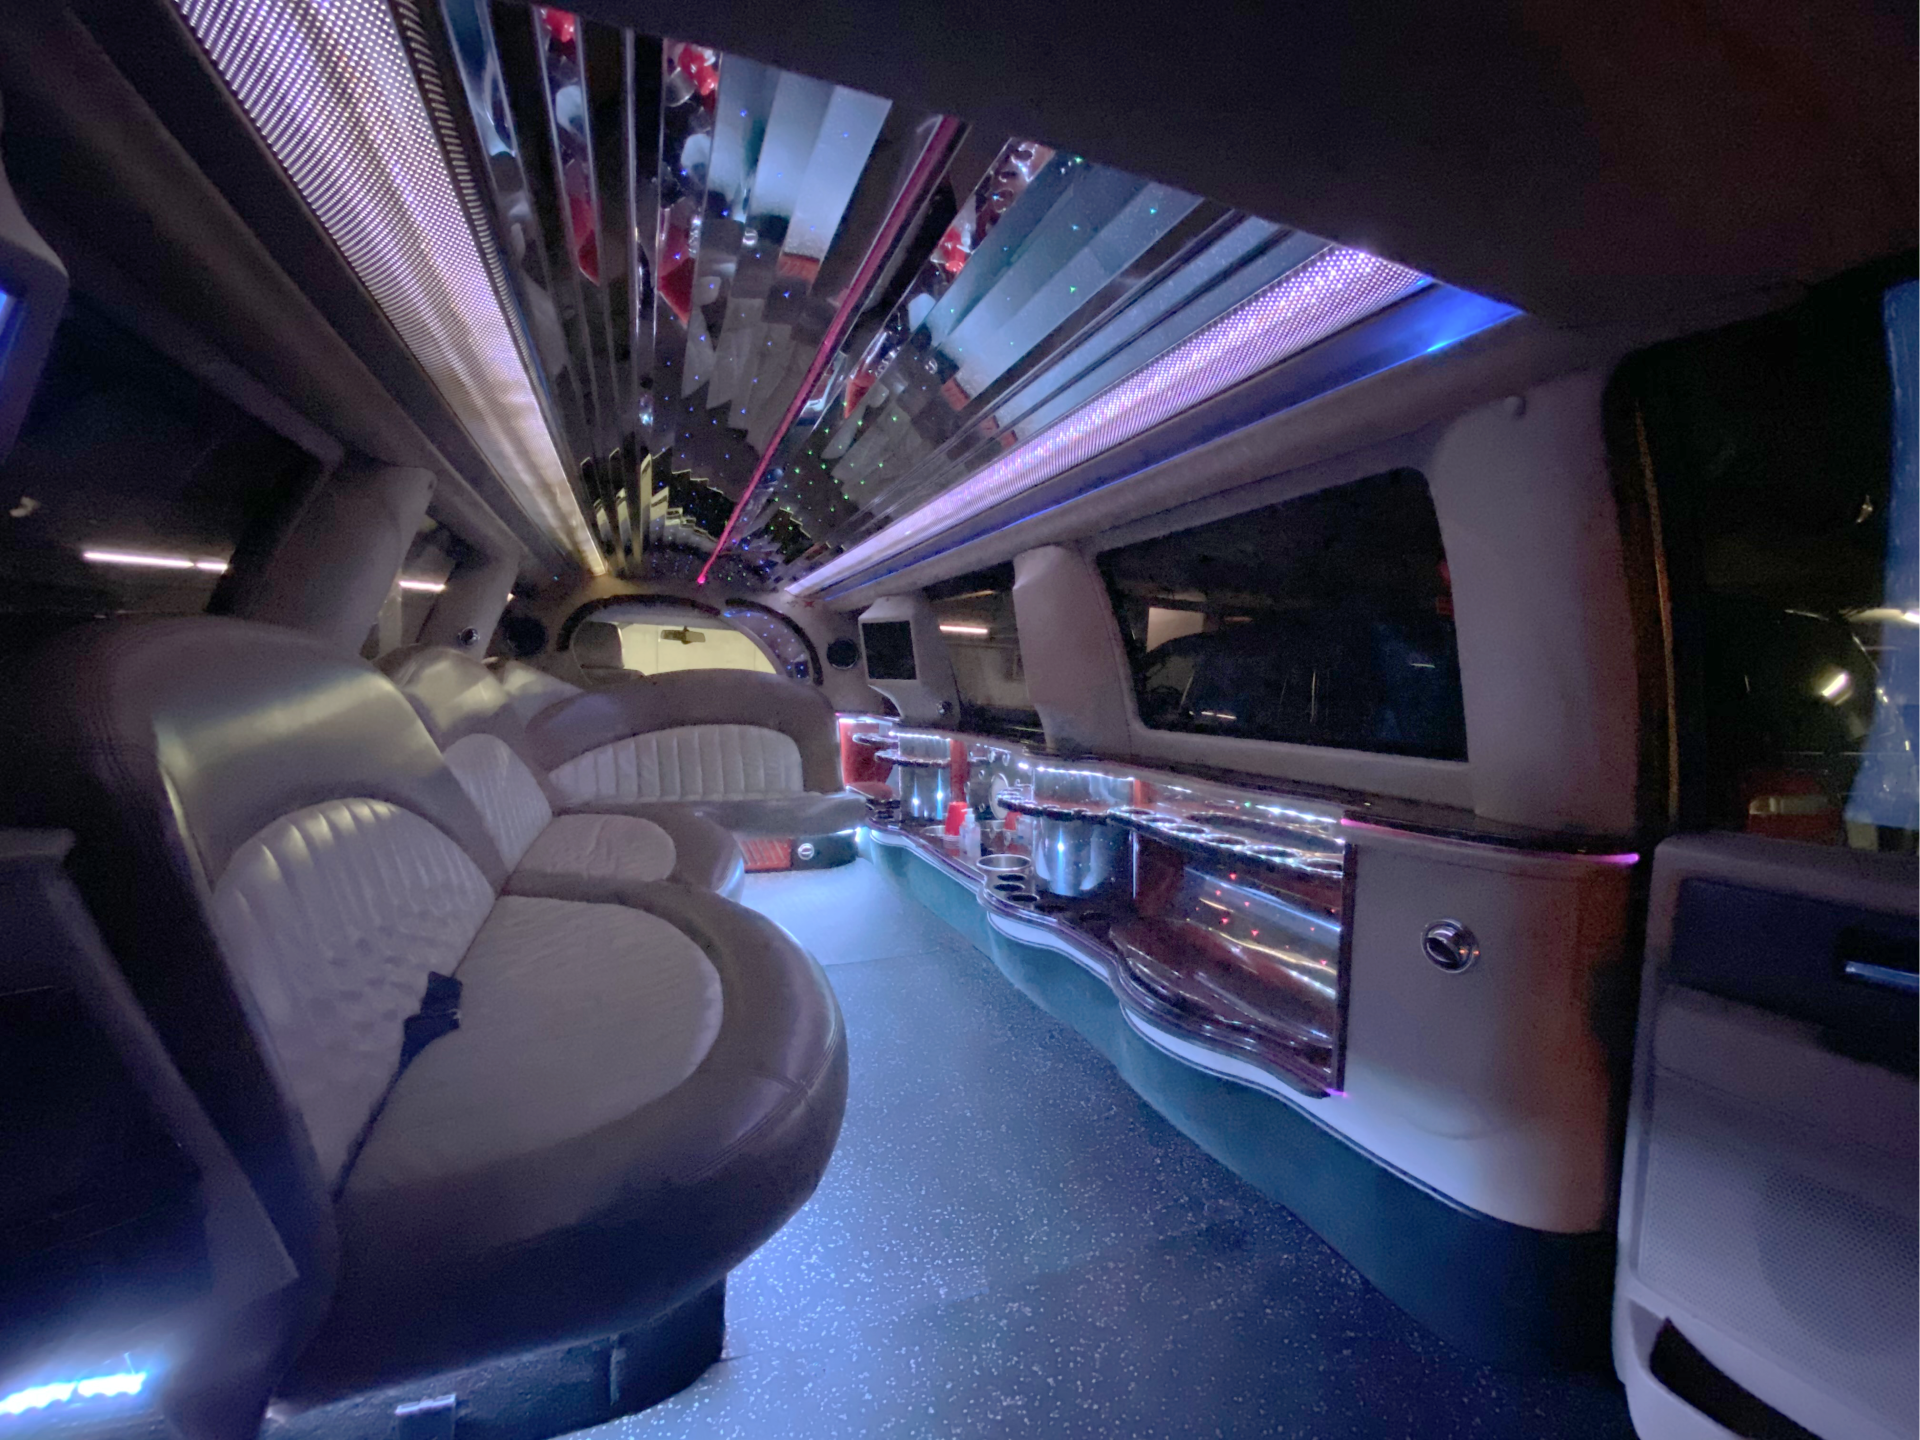 Limo To Go stretch SUV limousine interior 14 passenger